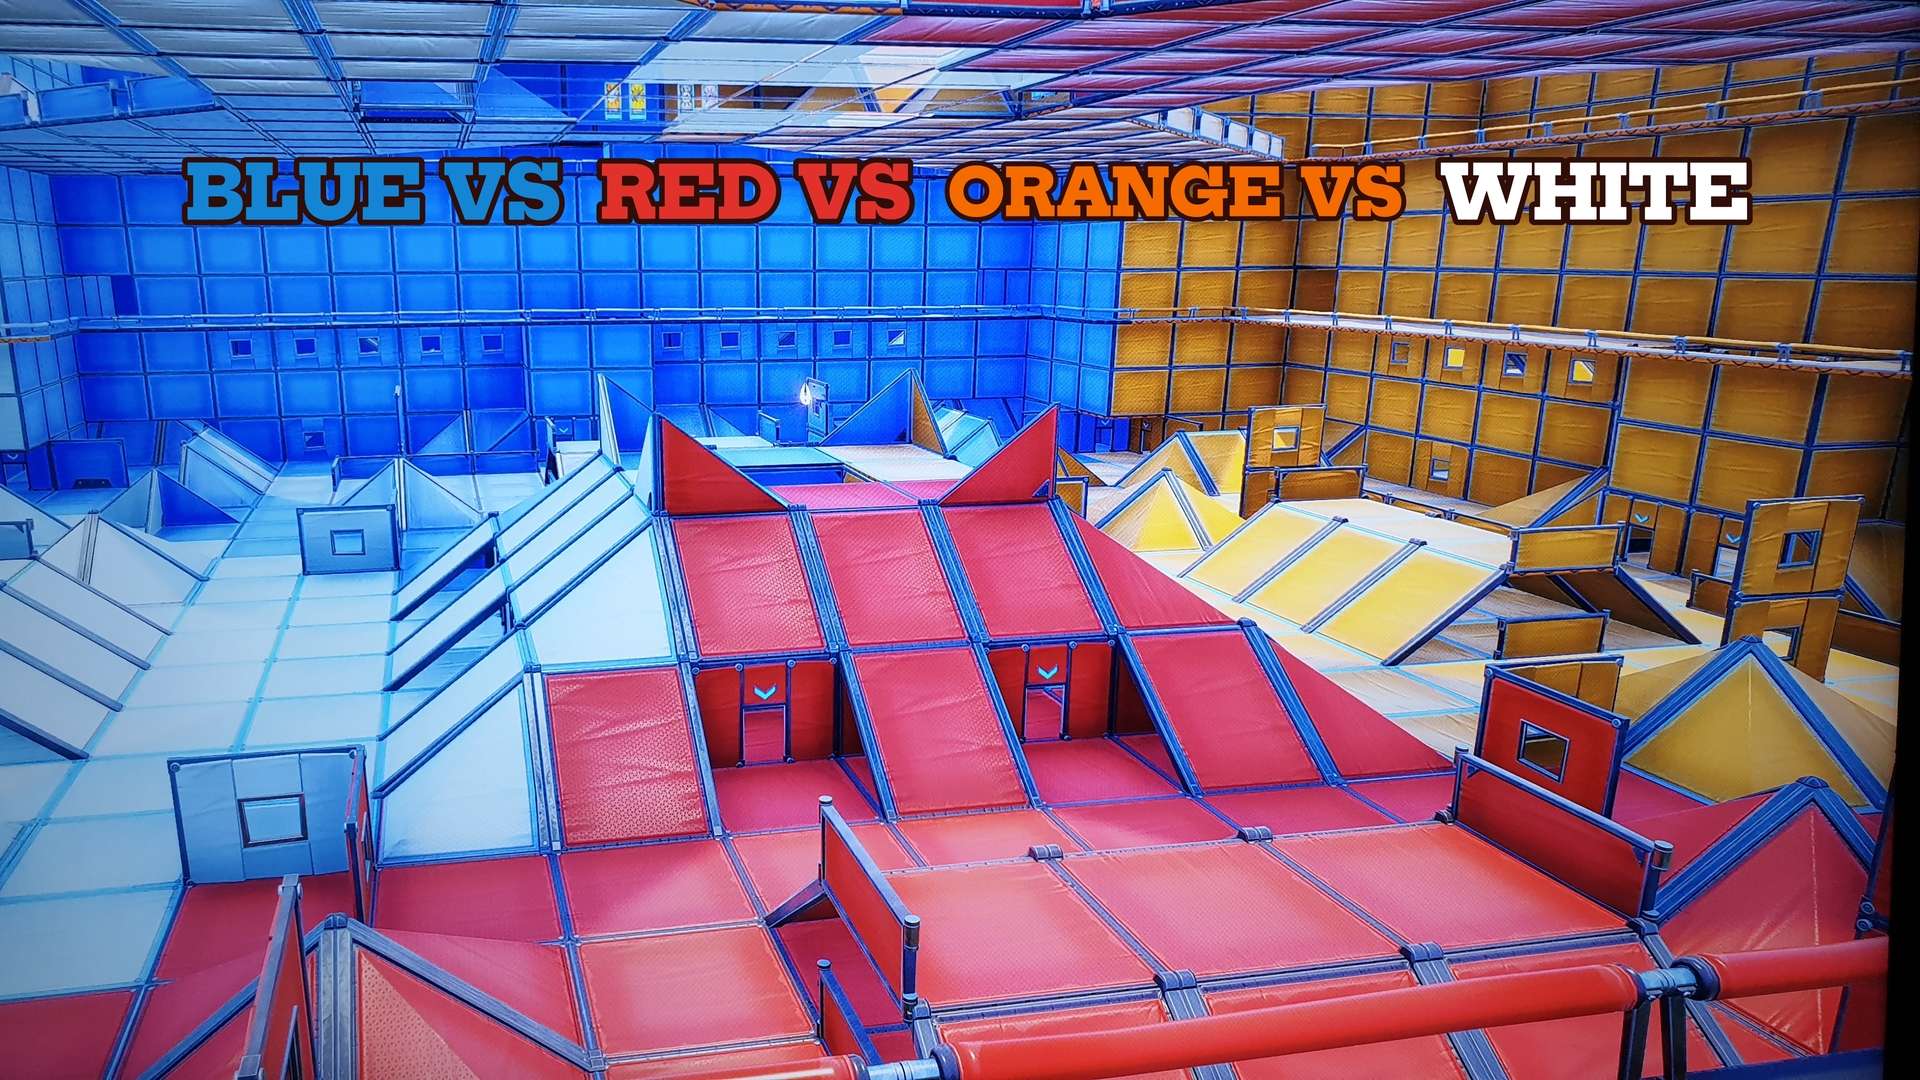 Red vs Blue vs Orange vs White